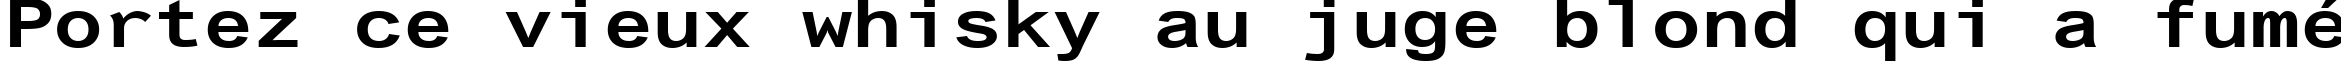 Пример написания шрифтом Arial Alternative Regular текста на французском